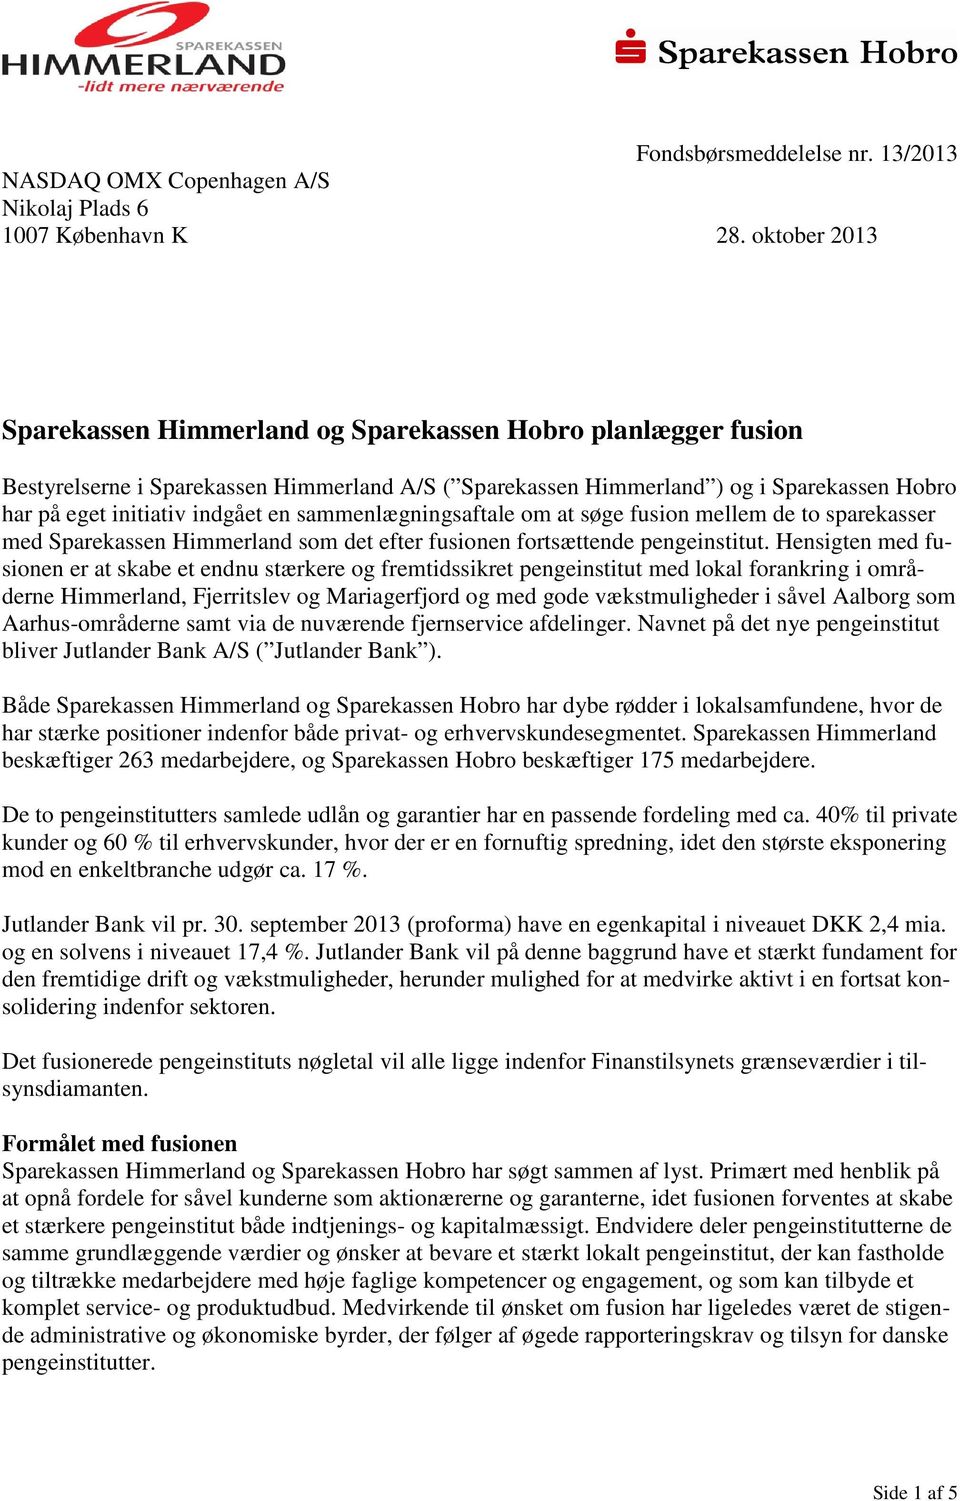 en sammenlægningsaftale om at søge fusion mellem de to sparekasser med Sparekassen Himmerland som det efter fusionen fortsættende pengeinstitut.